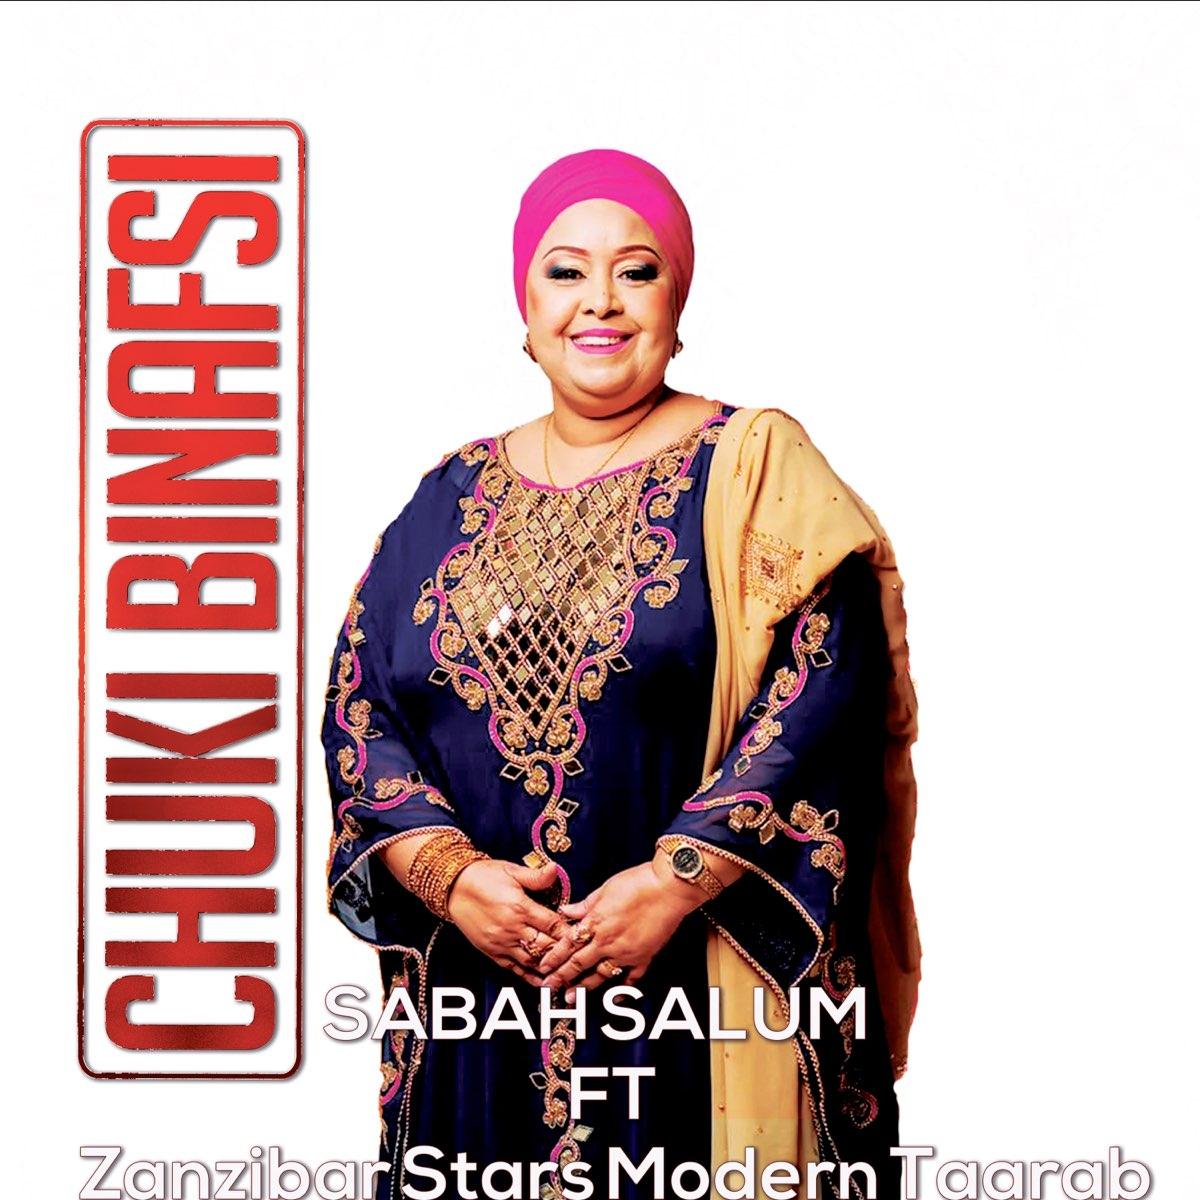 Chuki Binafsi By Sabah Salum Ft Zanzibar Stars Modern Taarab